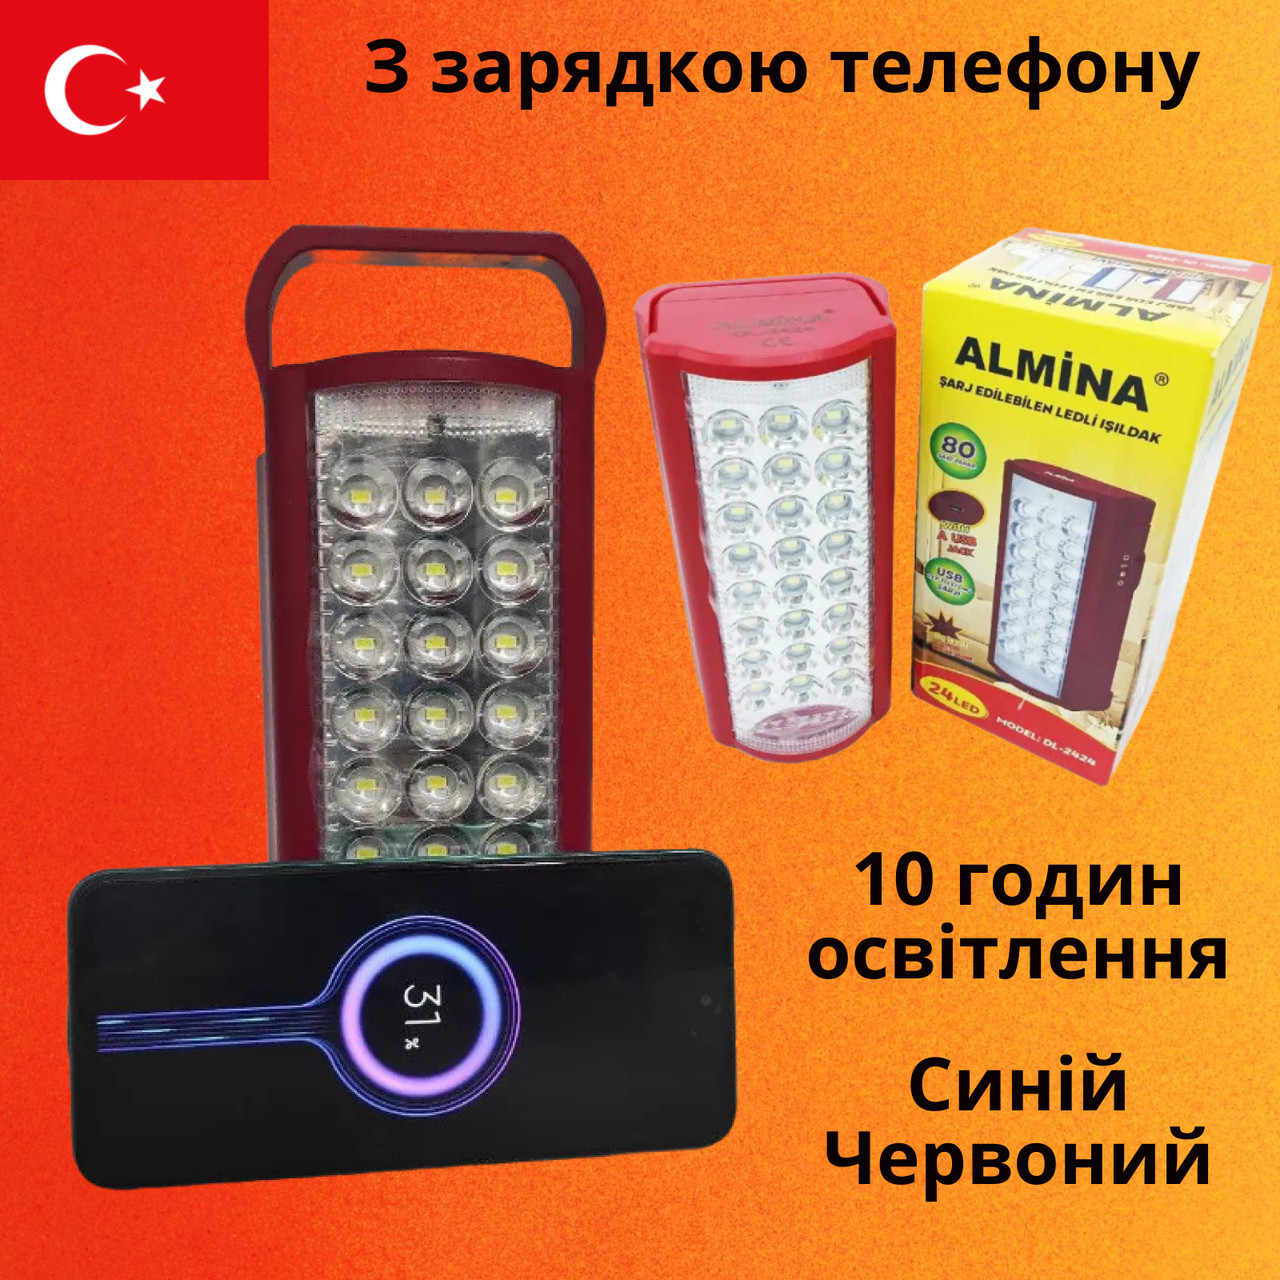 Ліхтар з павер банком переносний 24 LED Almina 3000 mAh Power bank  Турція аварійне освітлення кемпінговий